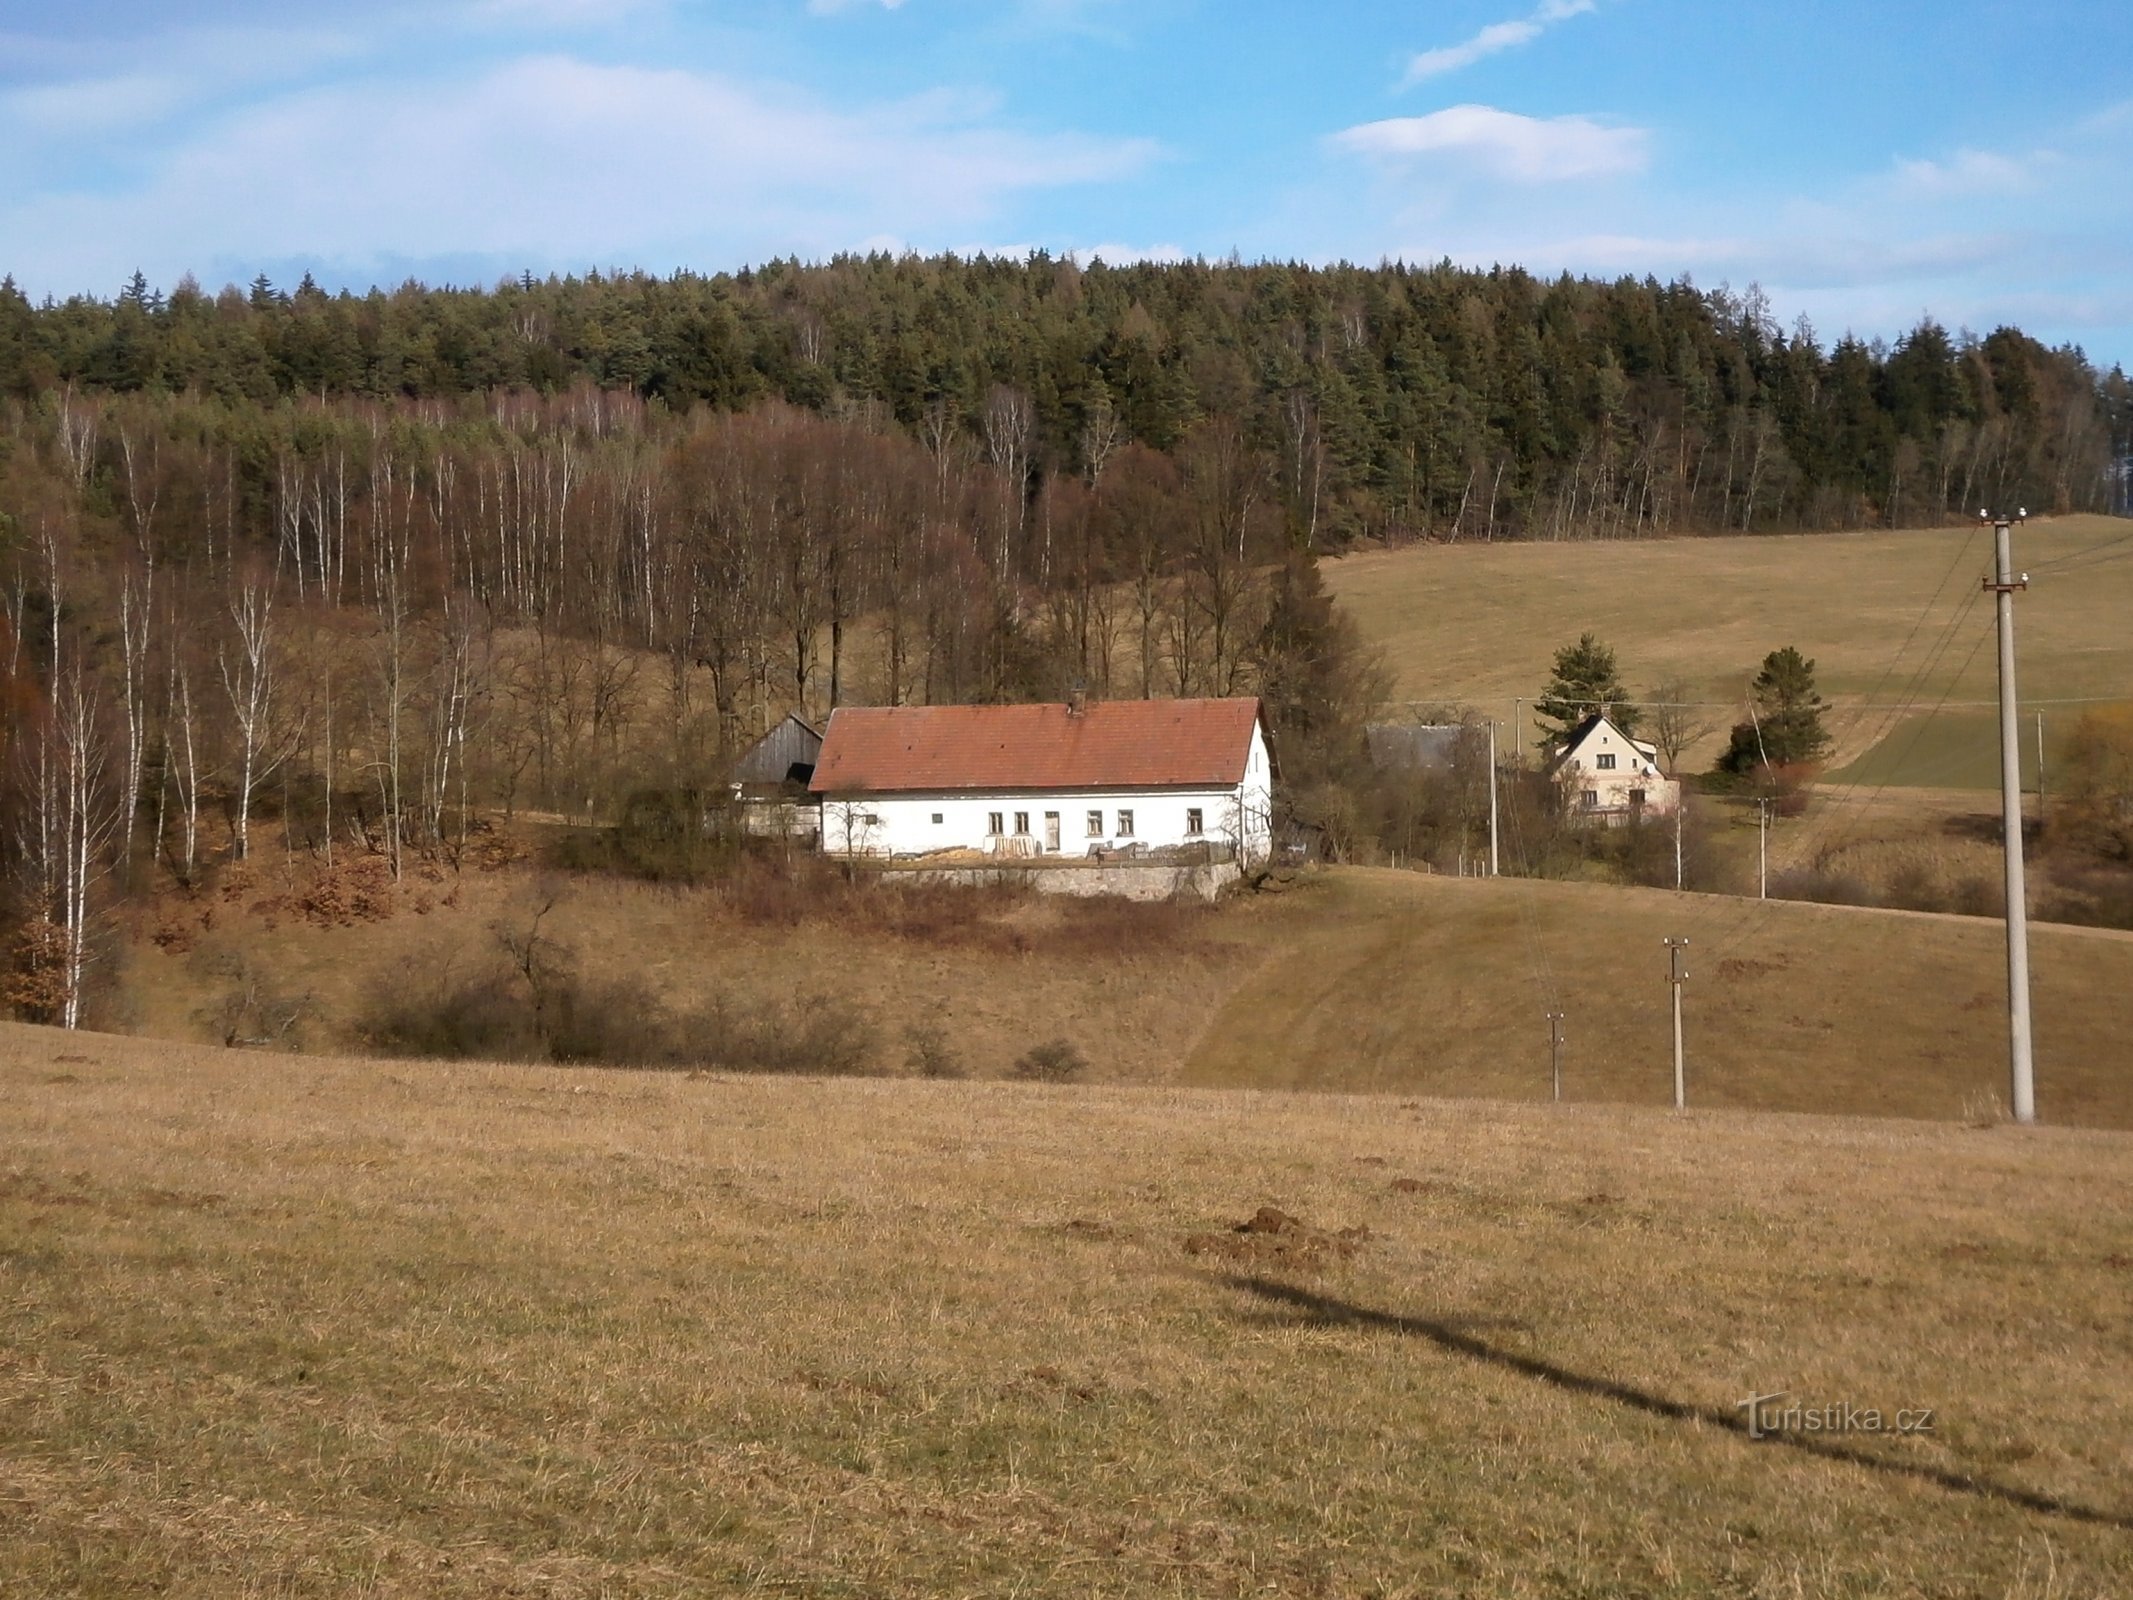 Havelovice maakt deel uit van Svobodné